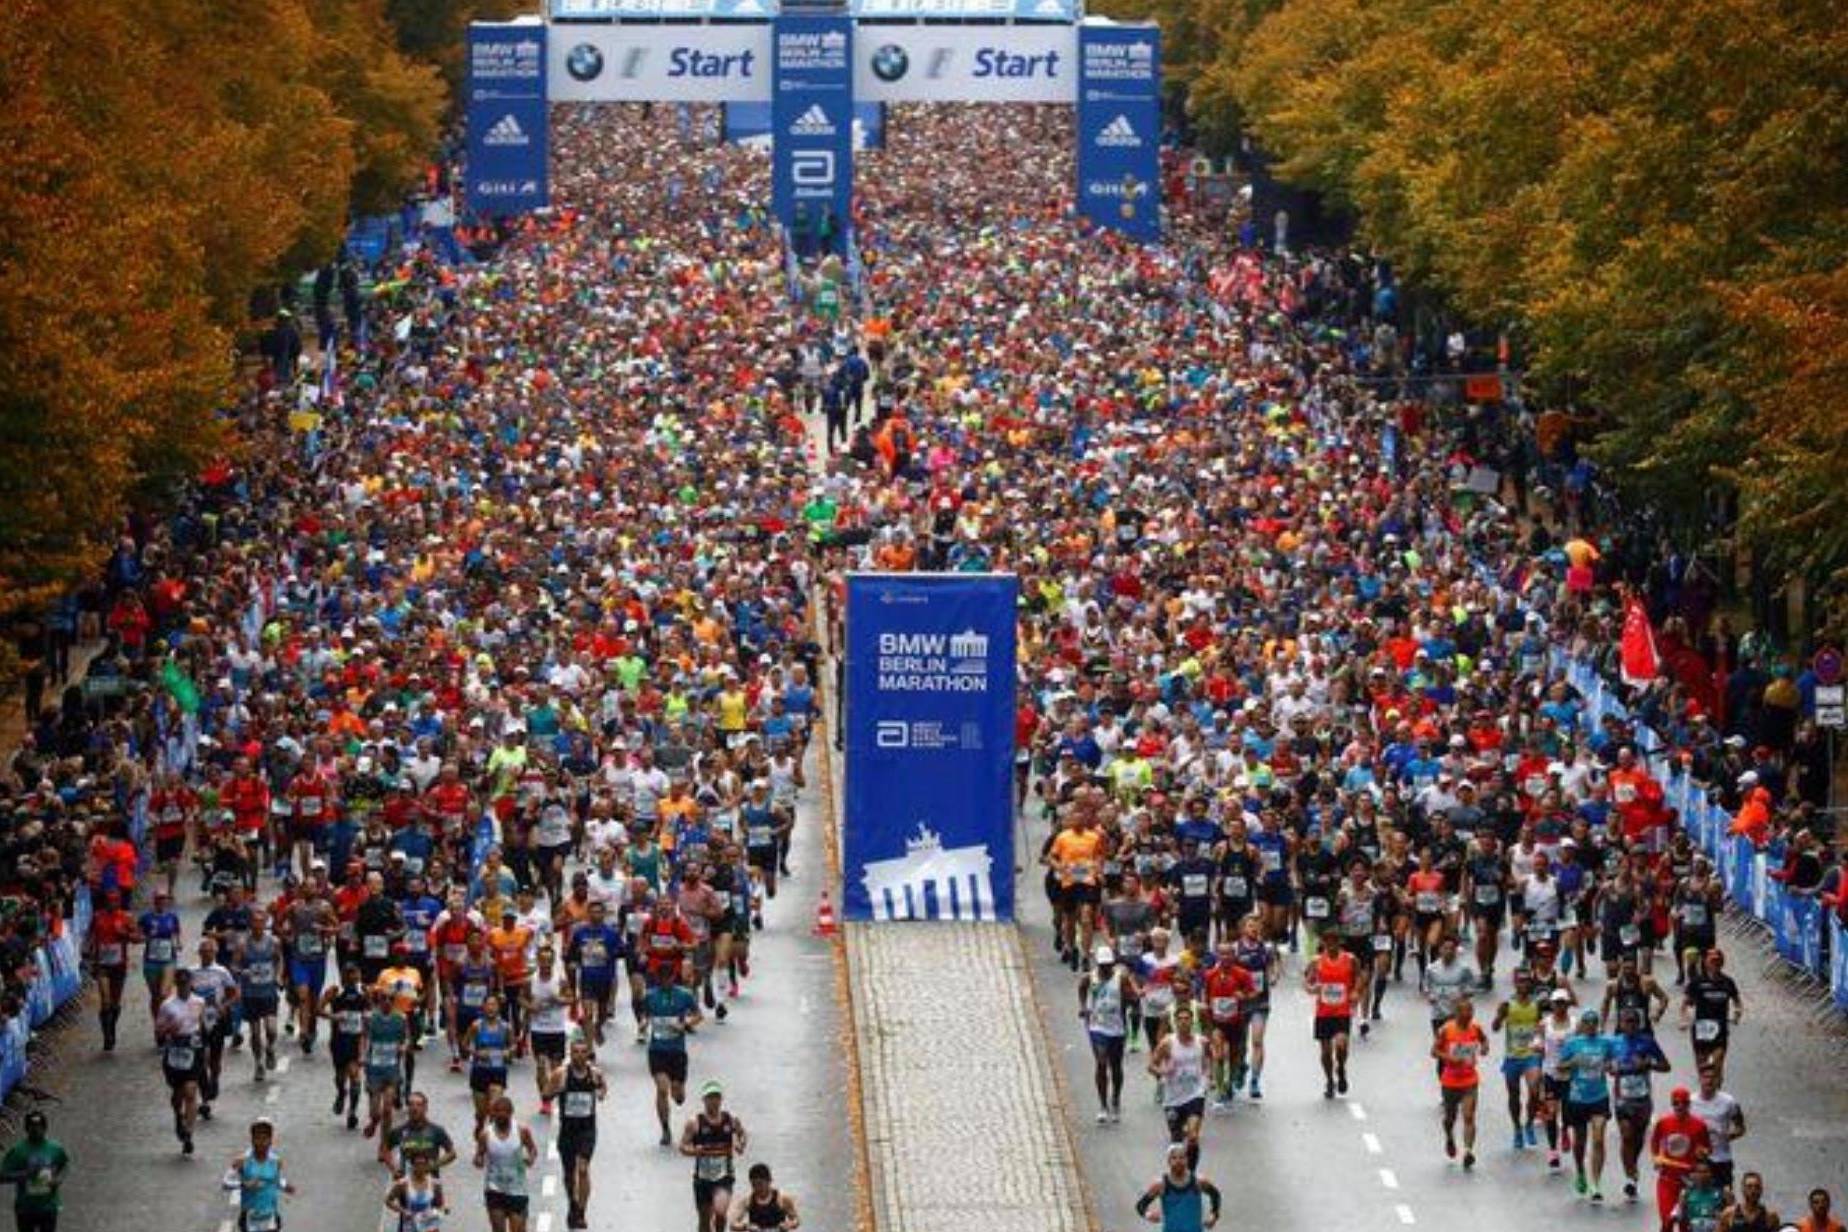 “马拉松”柏林马拉松前瞻丨基普乔格冲击世界纪录目标第四冠